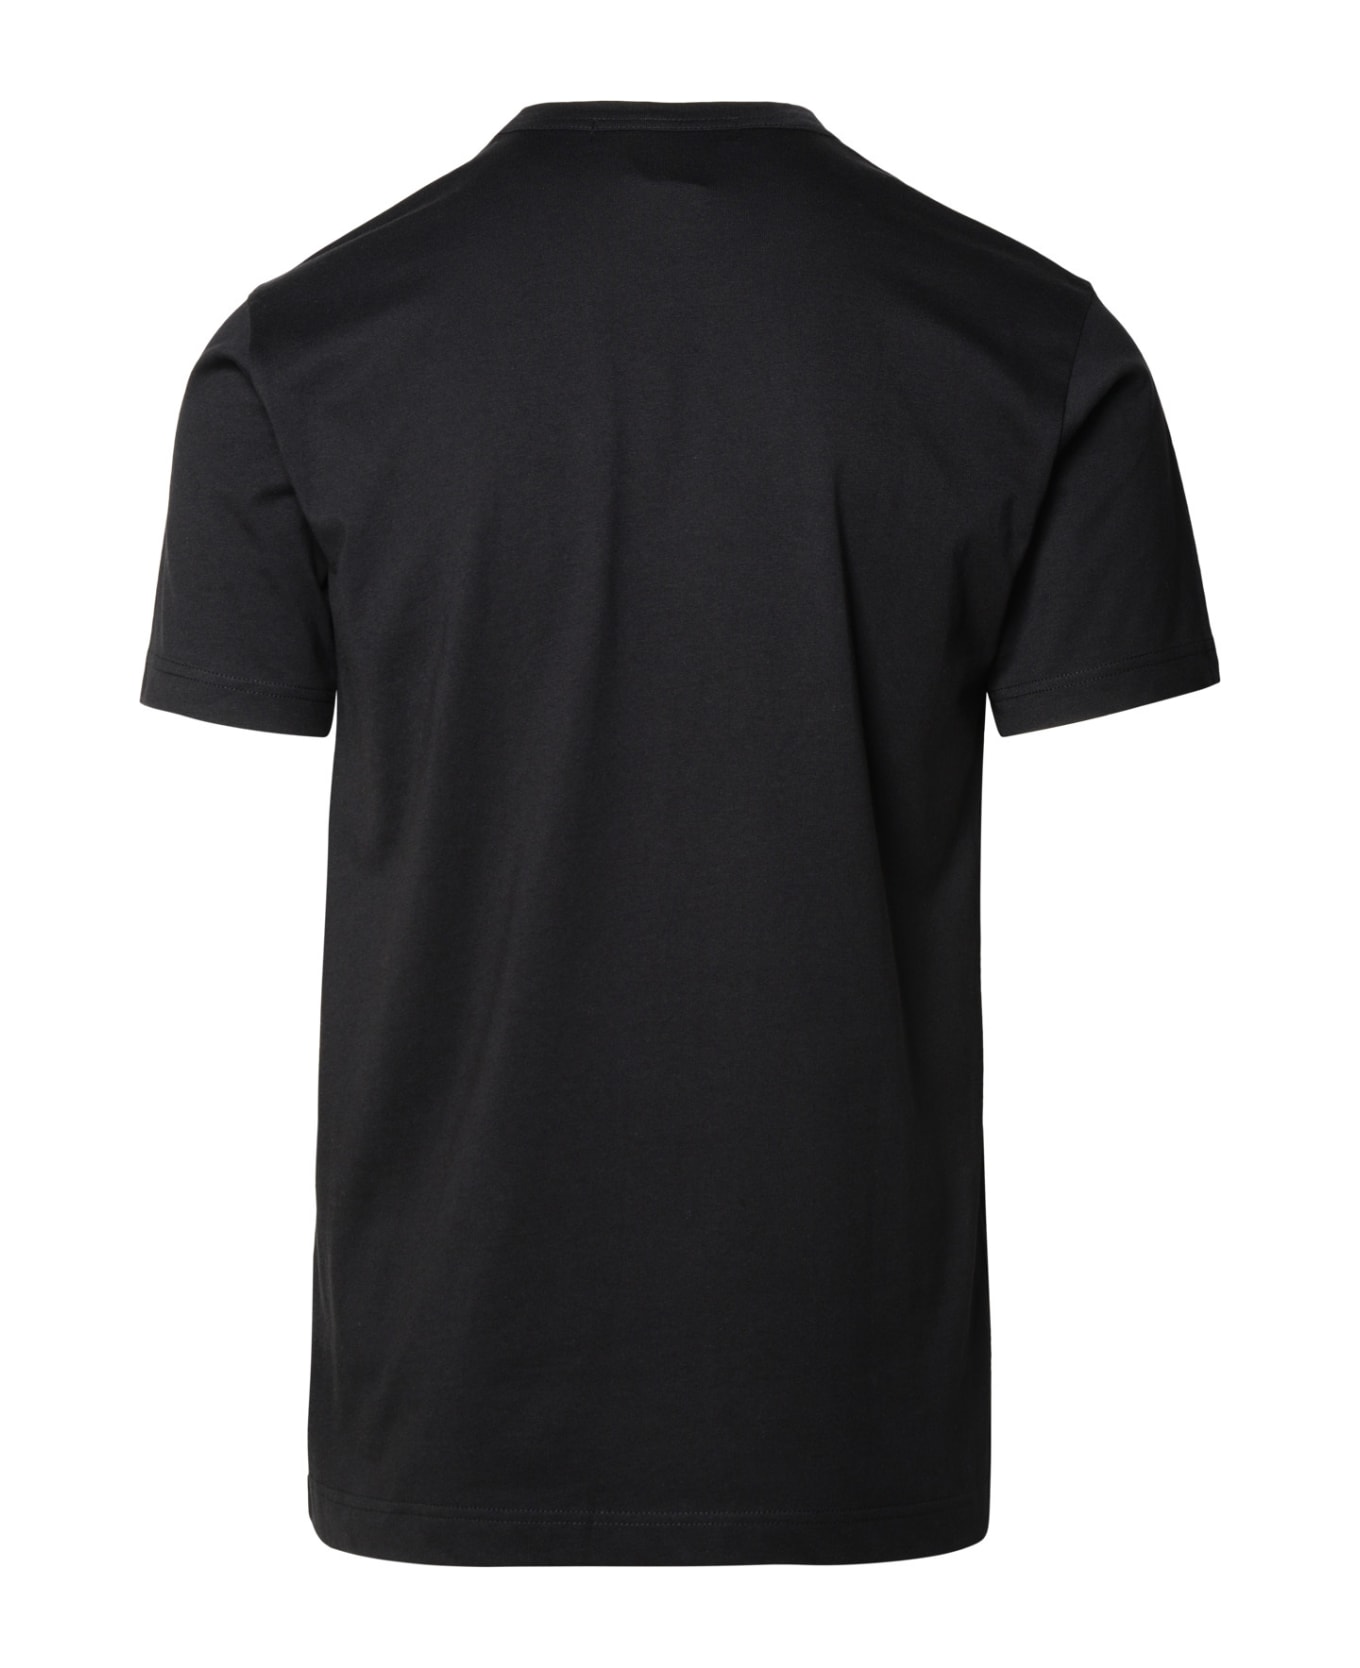 Comme des Garçons Shirt Black Cotton T-shirt - Black シャツ